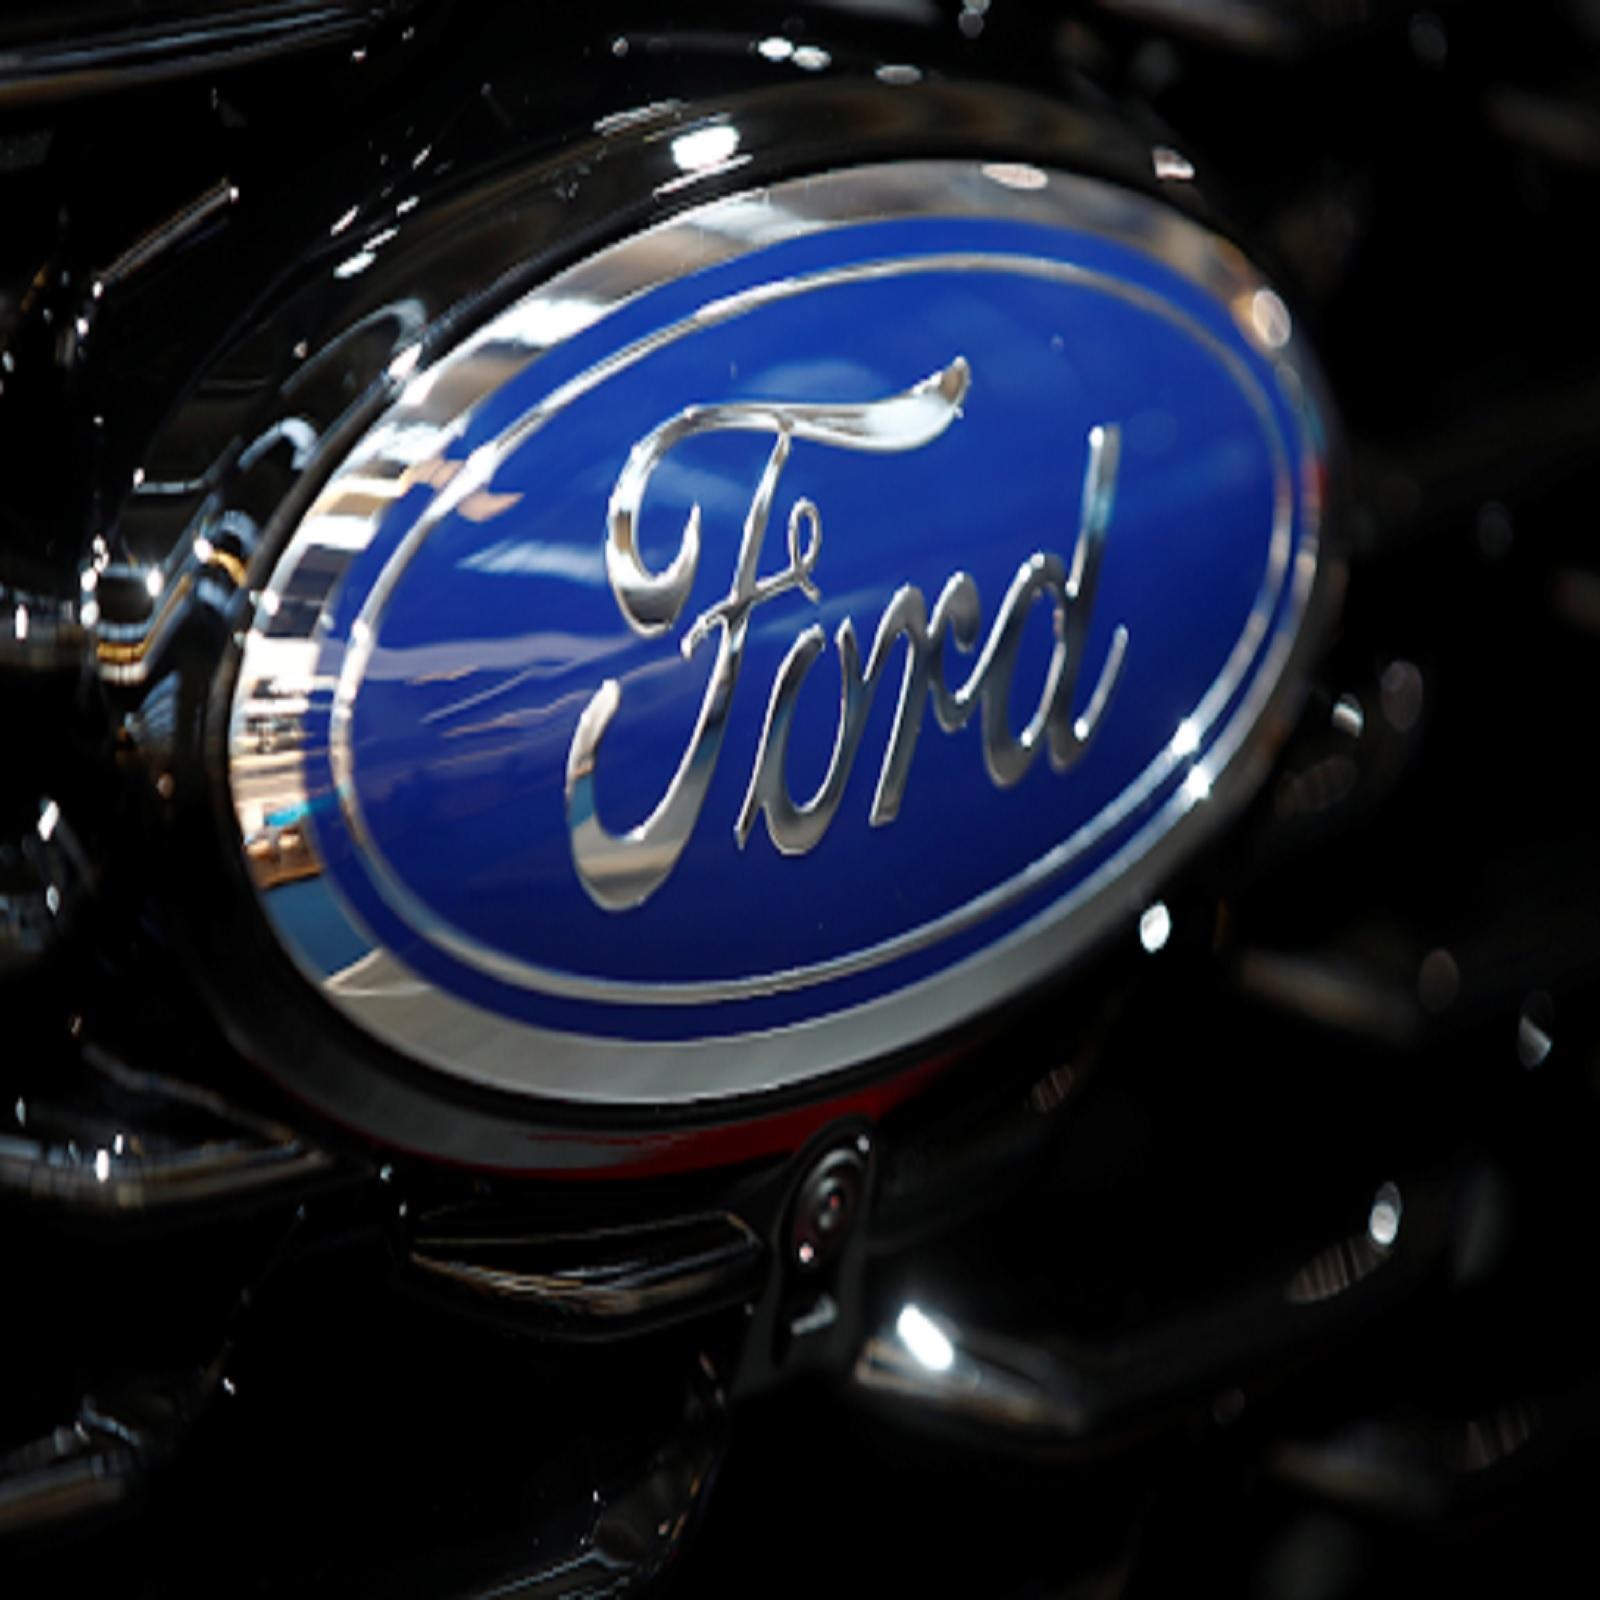 अमेरिकन वाहन निर्माता कंपनी Ford भारत में बंद करेगी अपनी मैन्युफैक्चरिंग यूनिट्स : रिपोर्ट